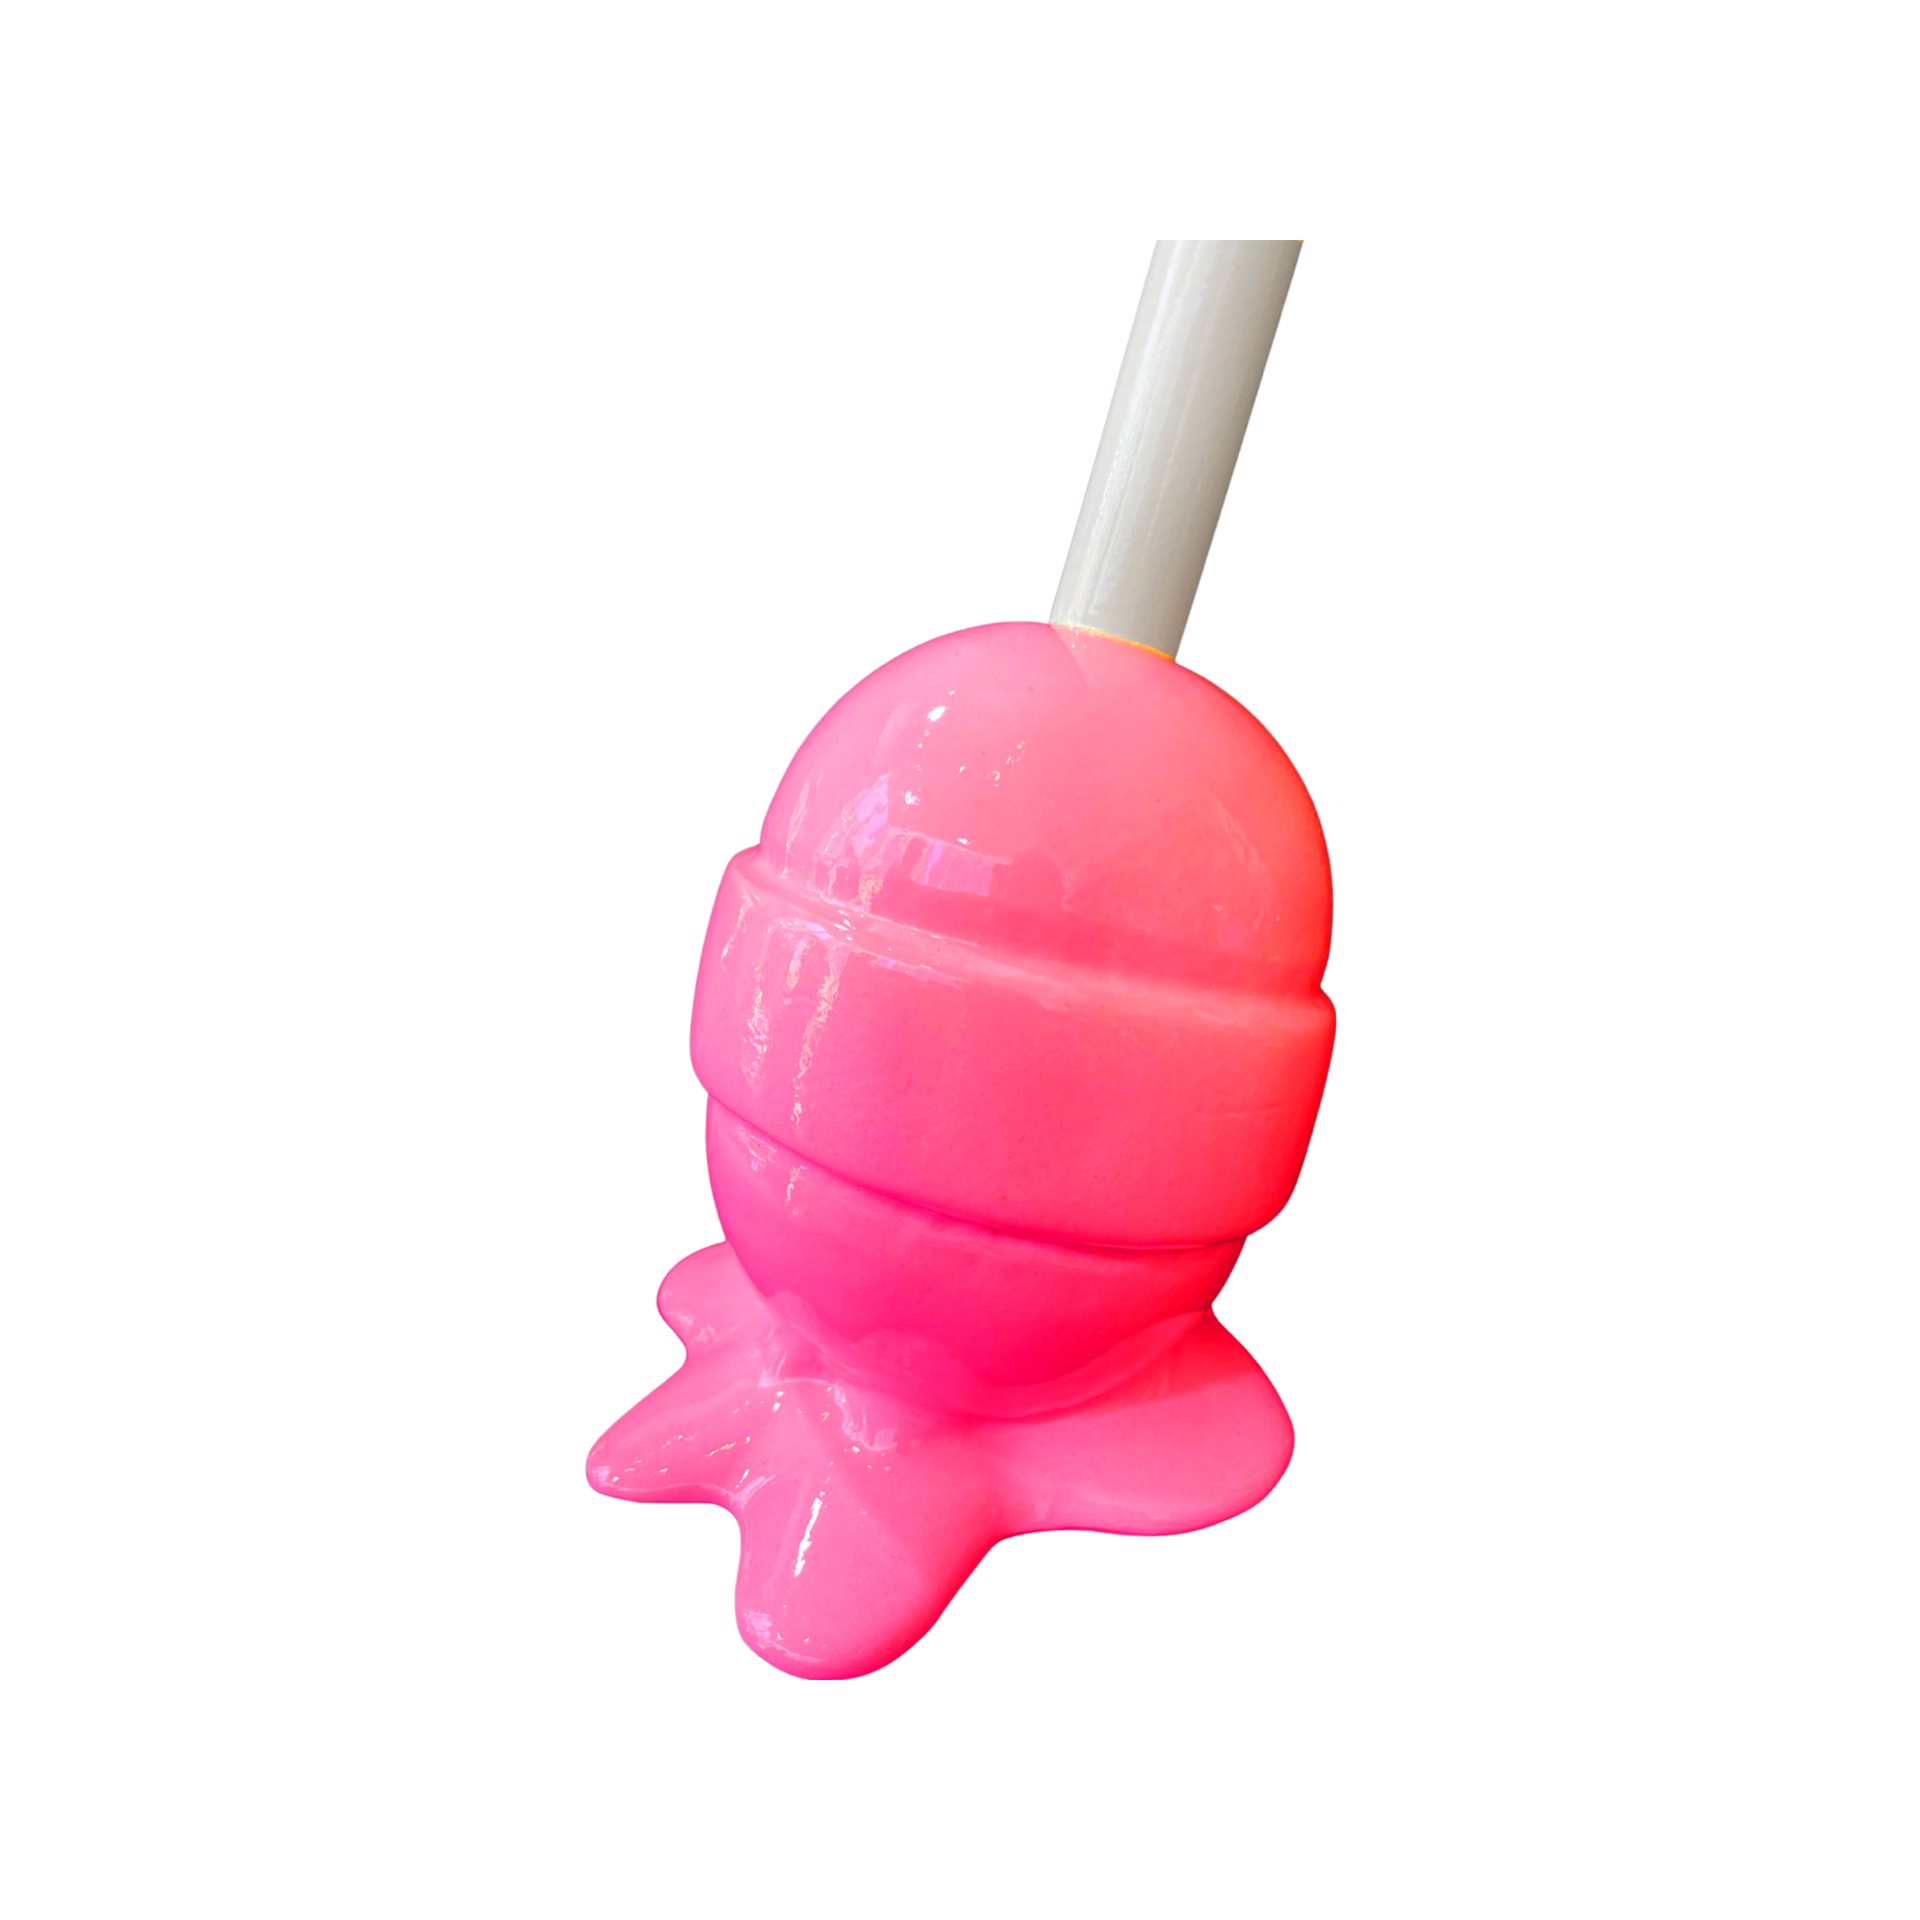 Hot Pink Small Lollipop by Lollipops by Elena Bulatova